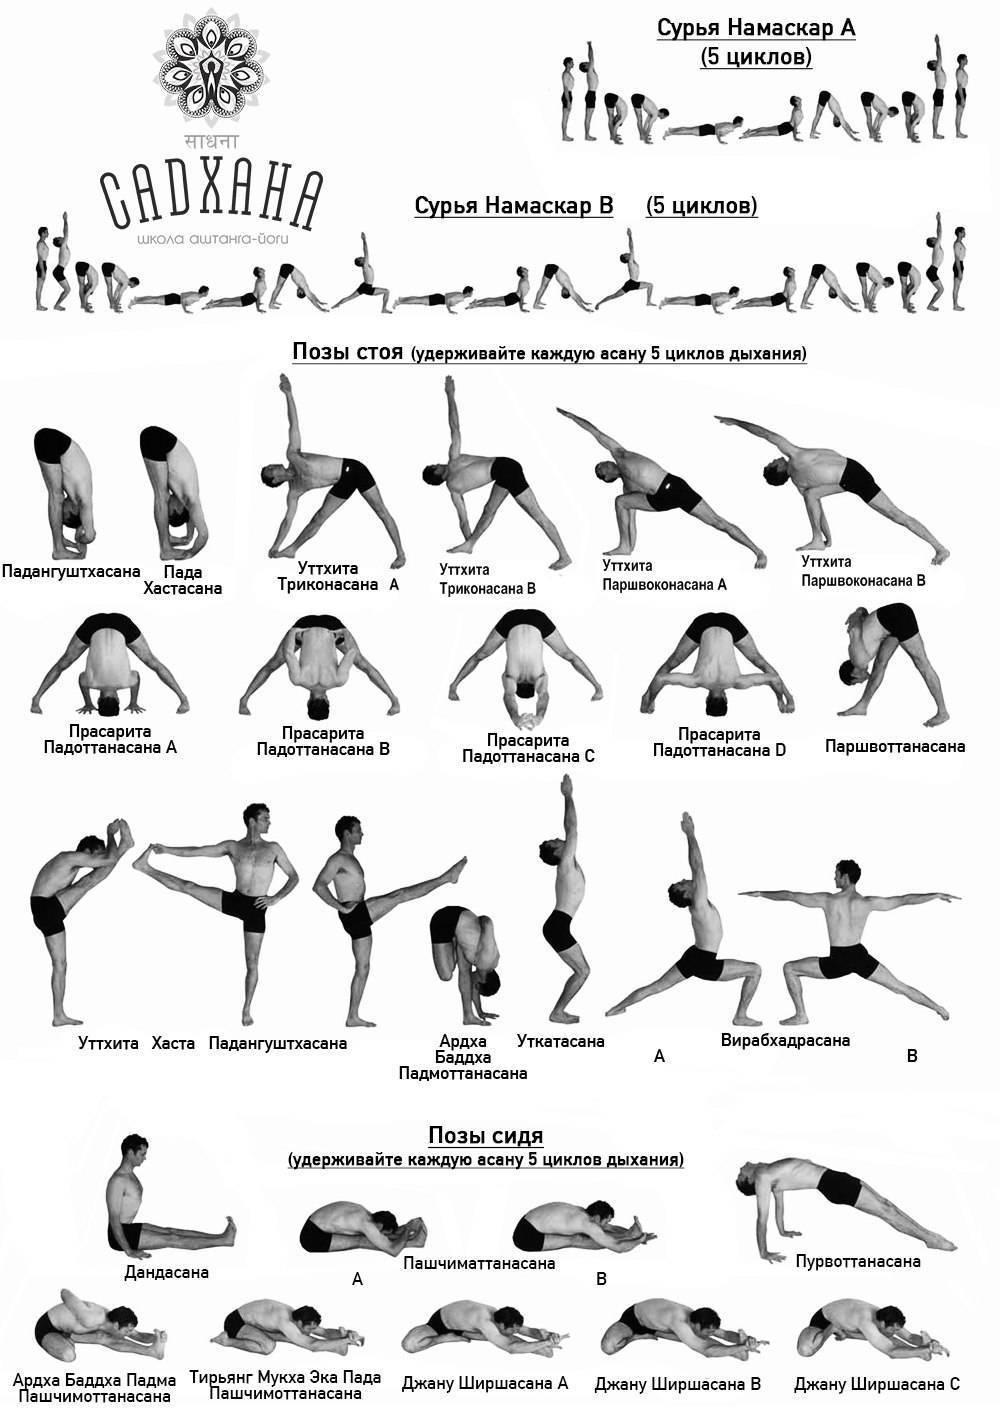 Сурья намаскар для начинающих практиковать йогу